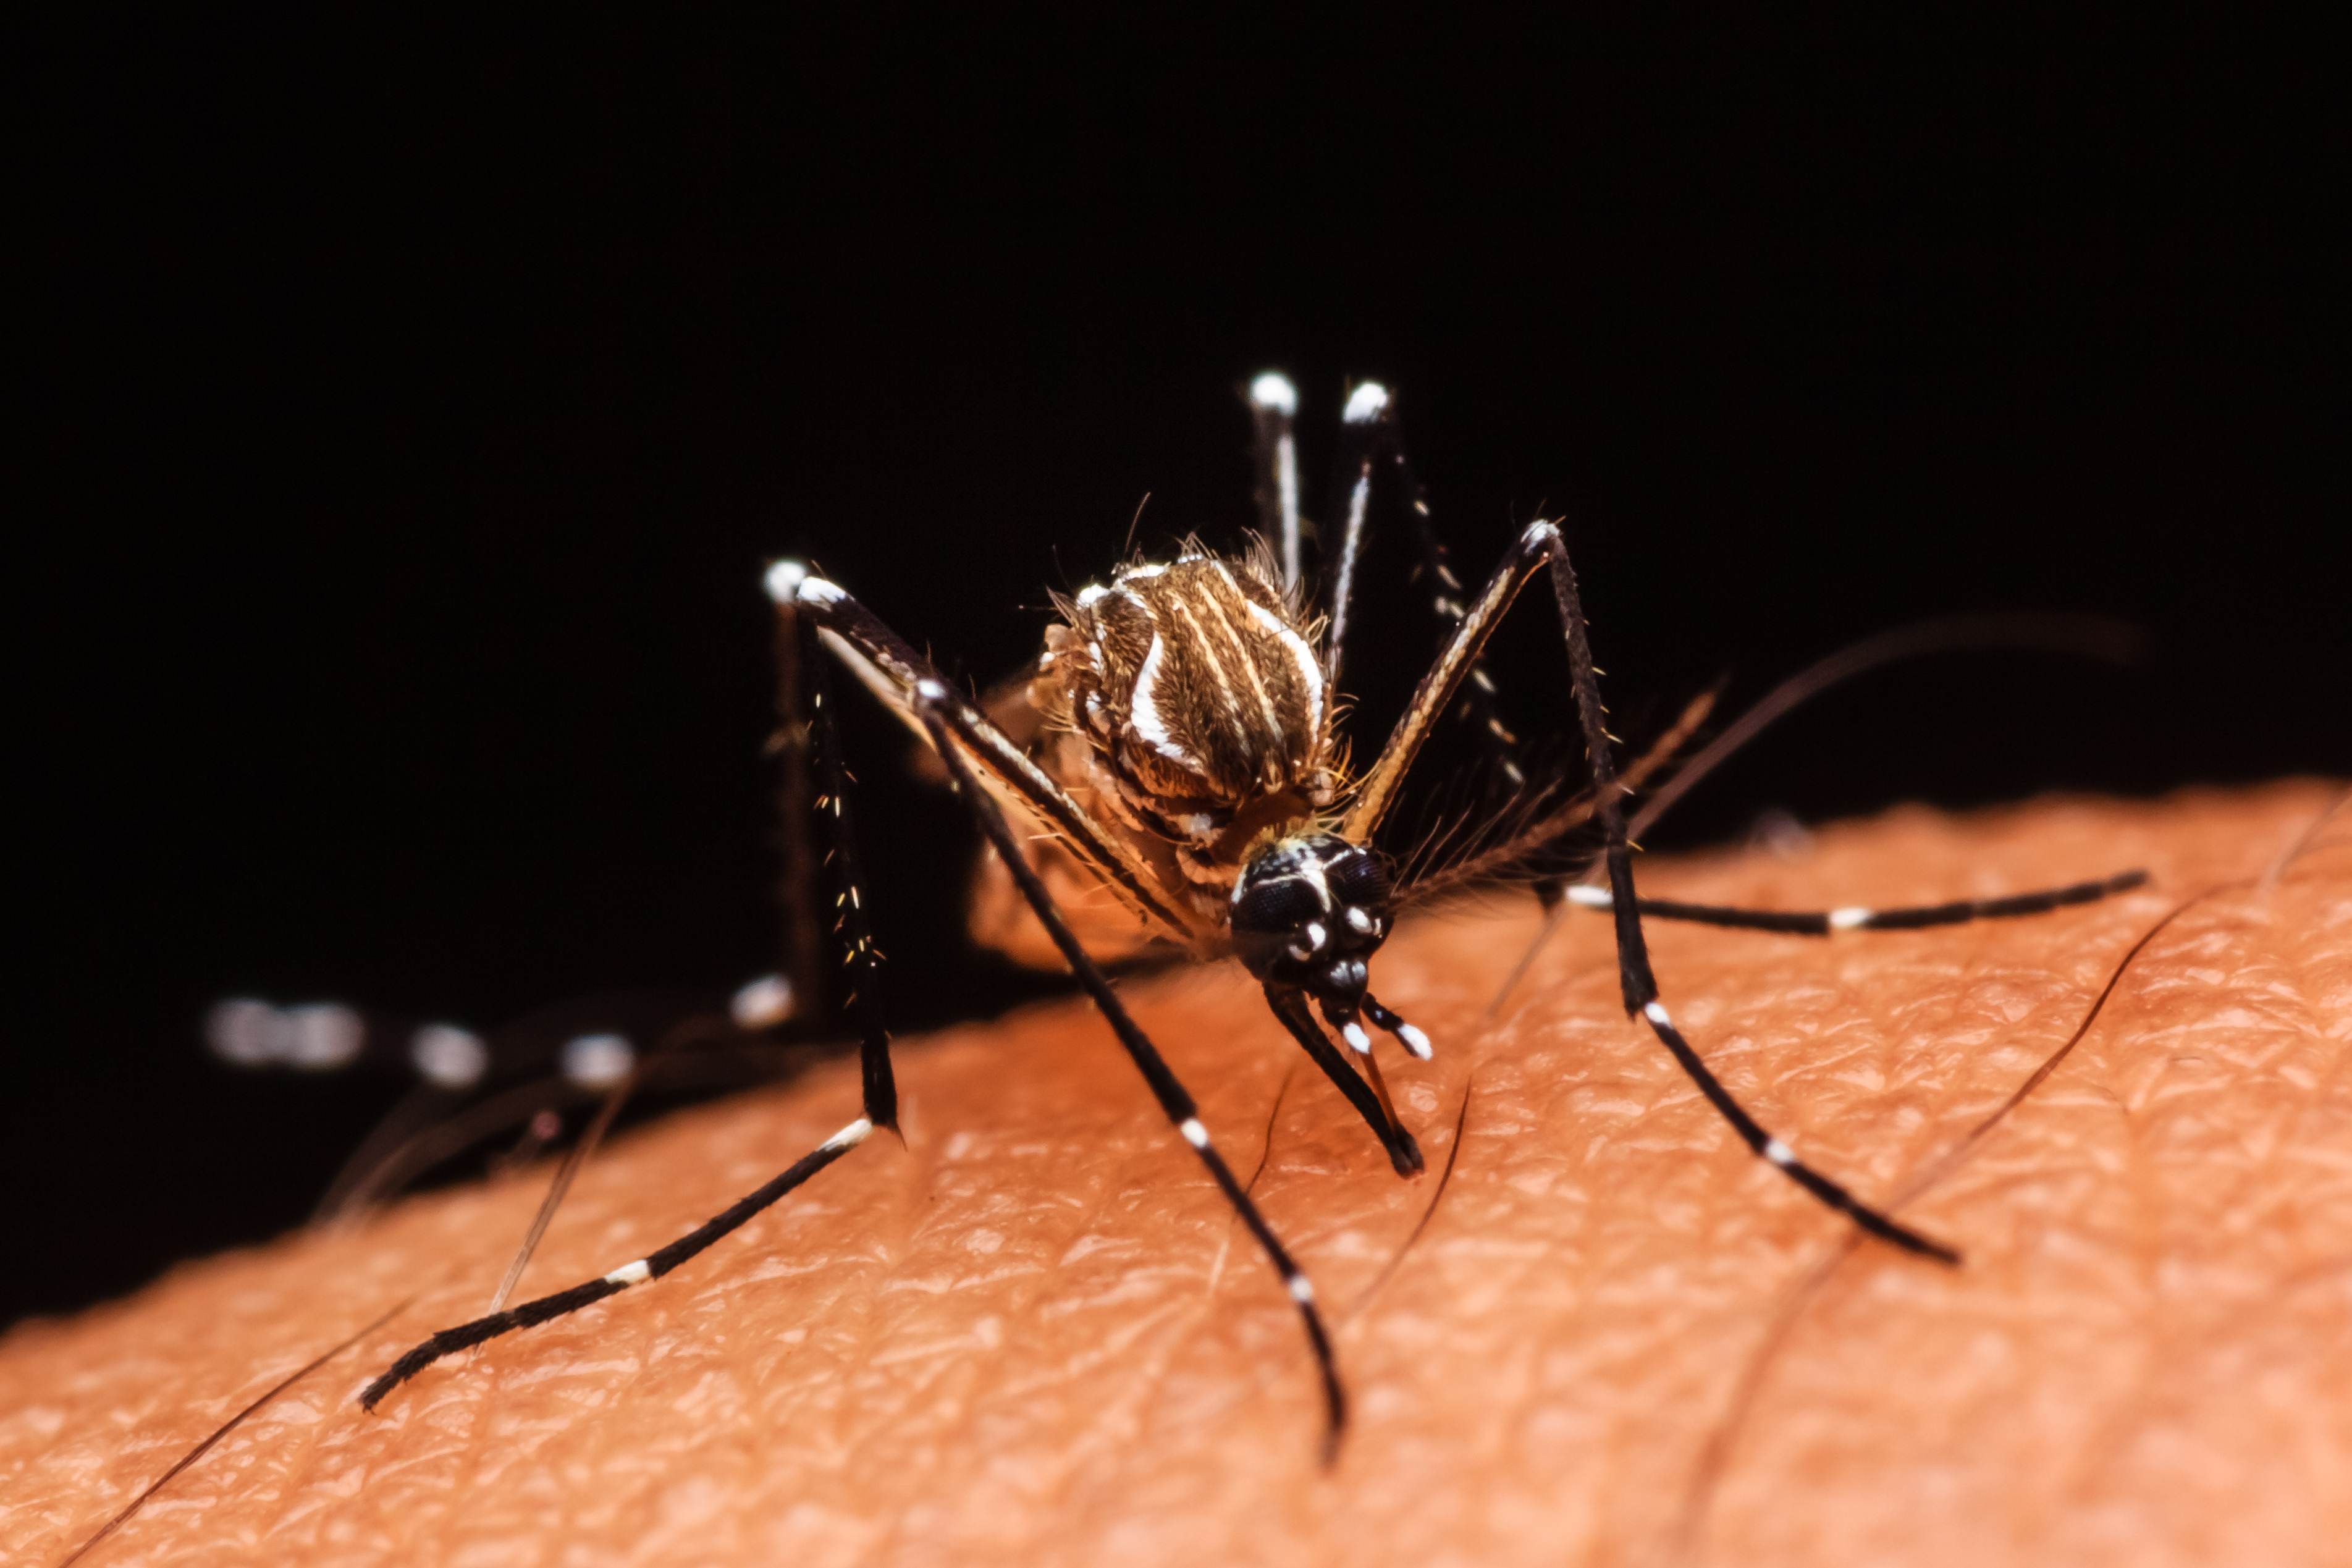     Une fillette de 10 ans décède d'une suspicion de dengue 

